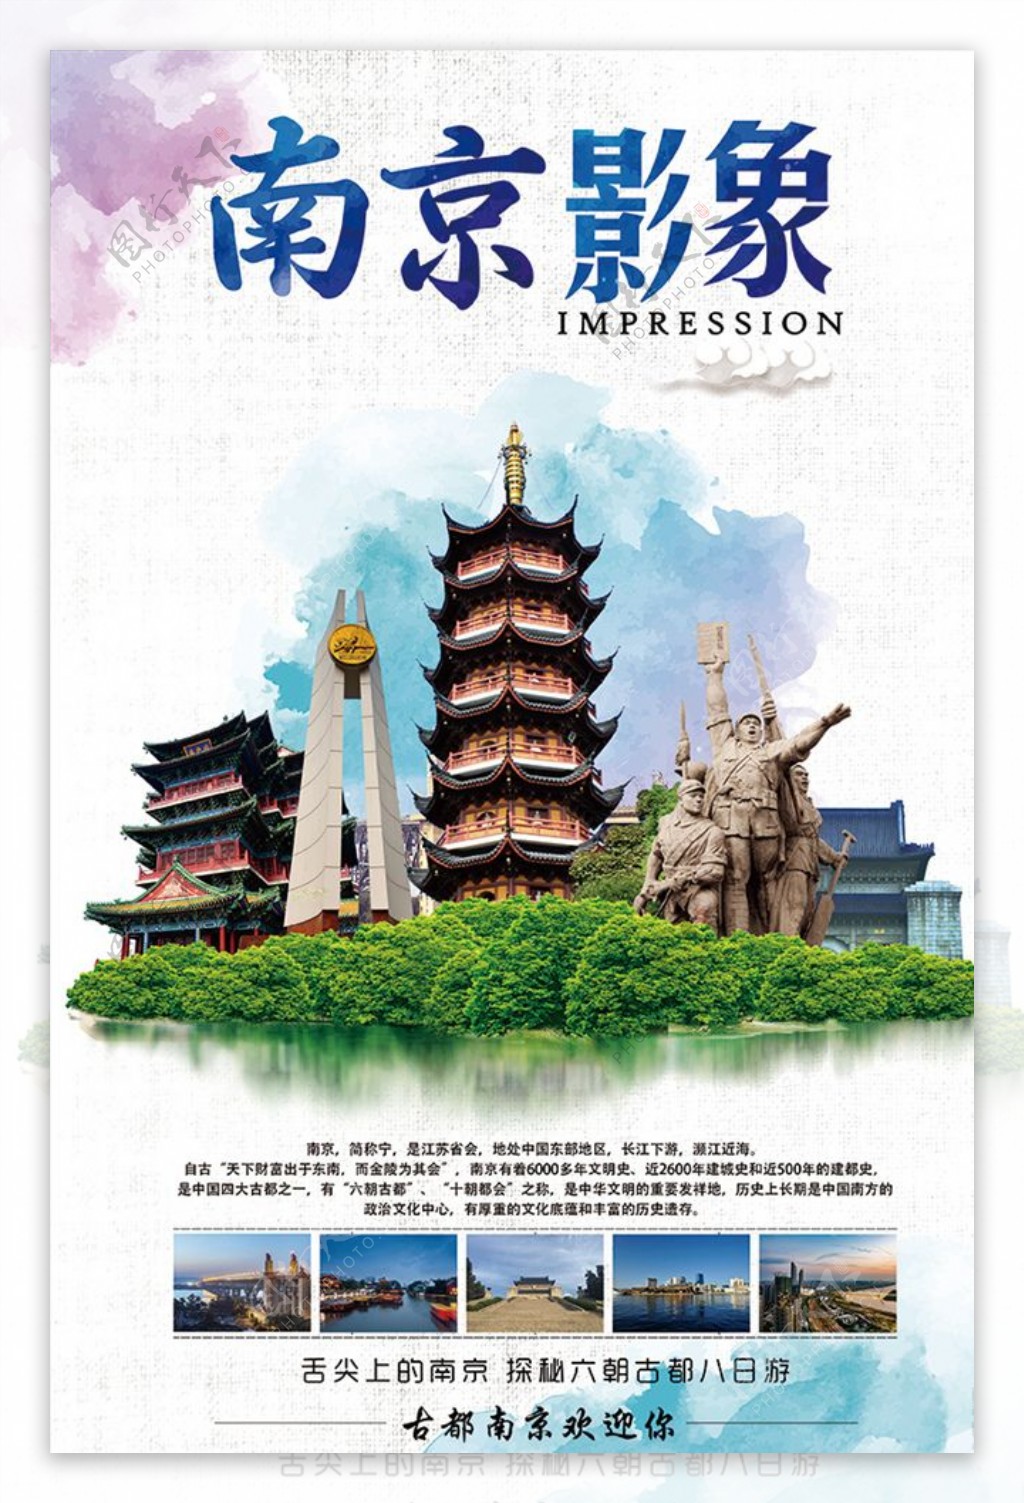 南京印象旅游广告旅游海报